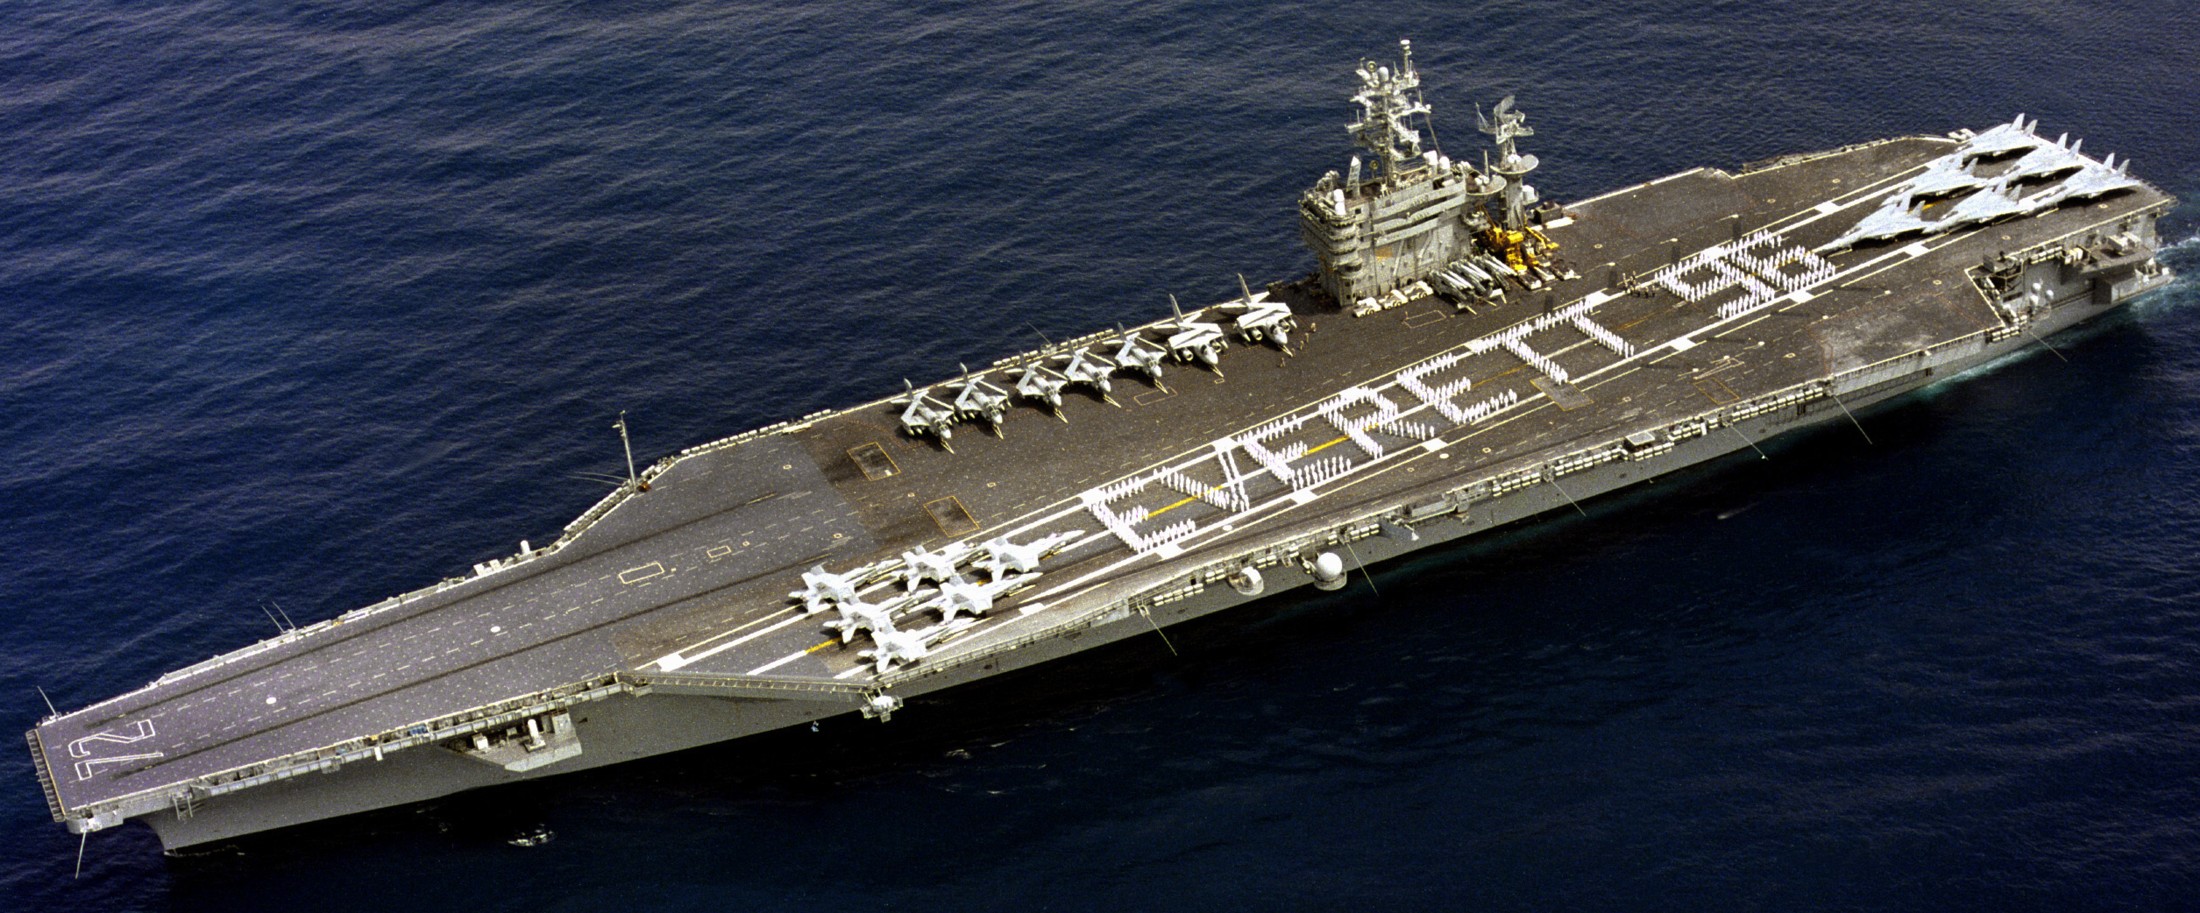 cvn-72 uss abraham lincoln nimitz class aircraft carrier us navy 194